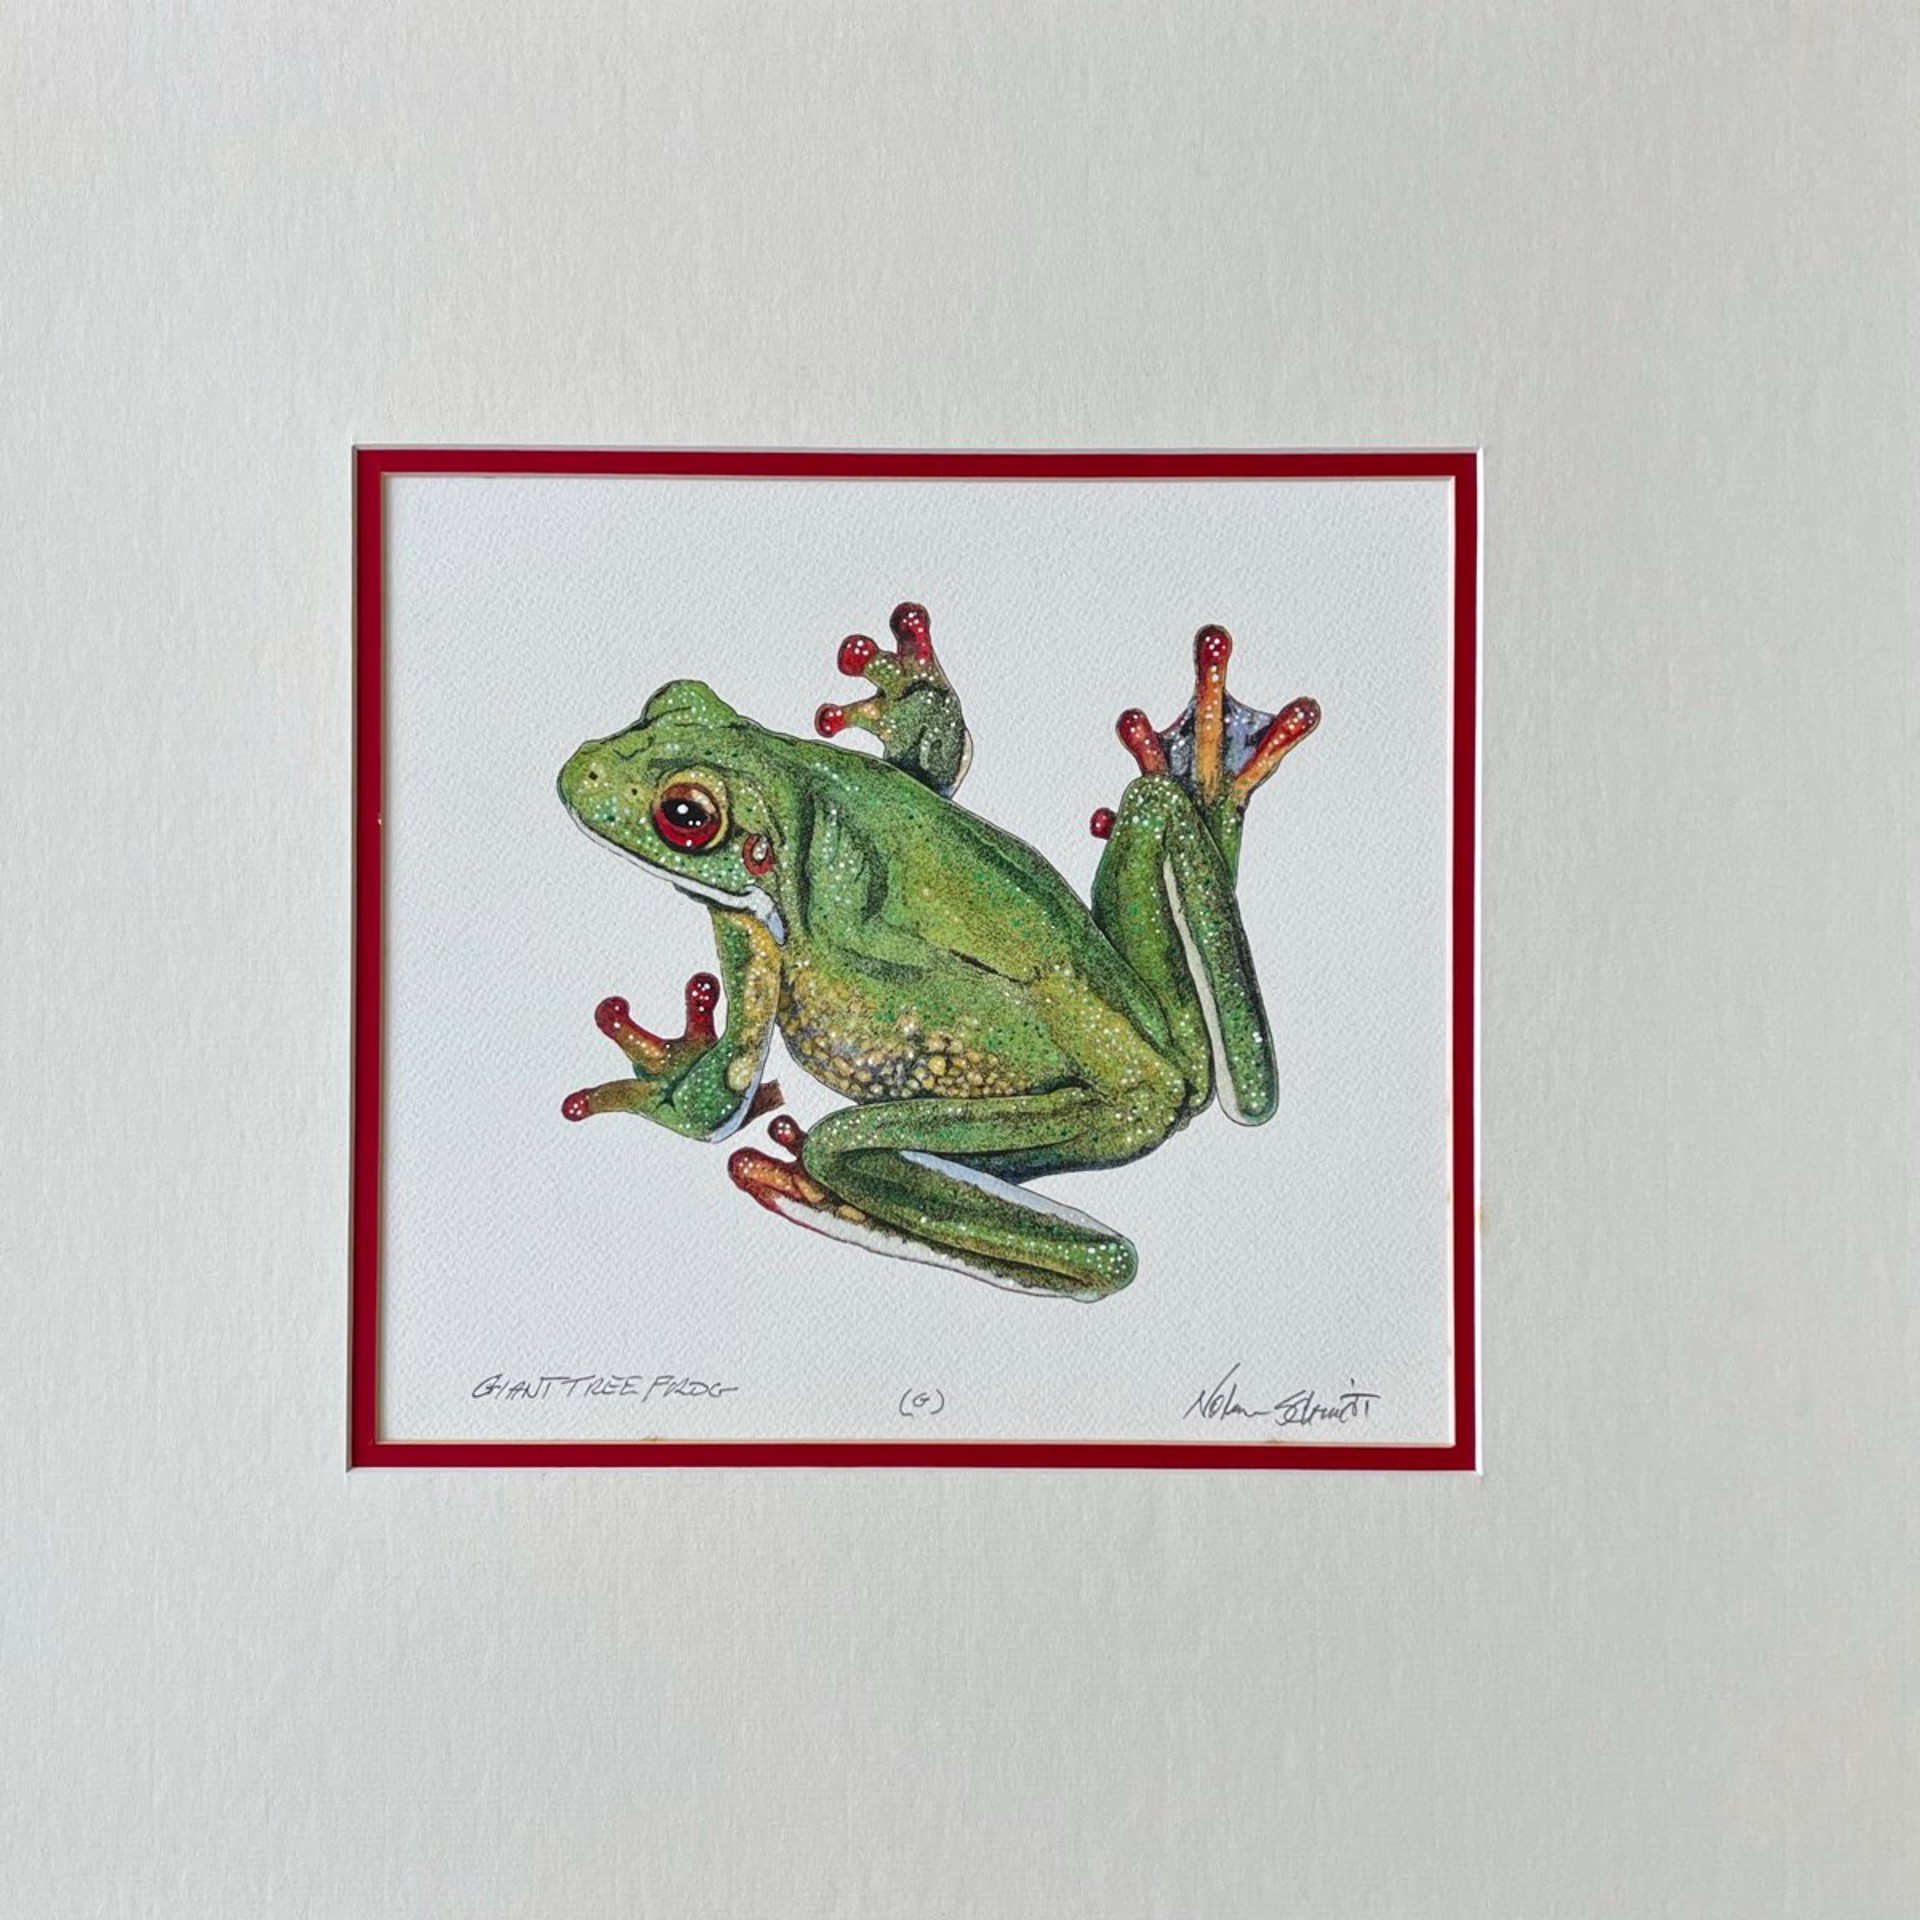 Giant Tree Frog by William Nolen-Schmidt